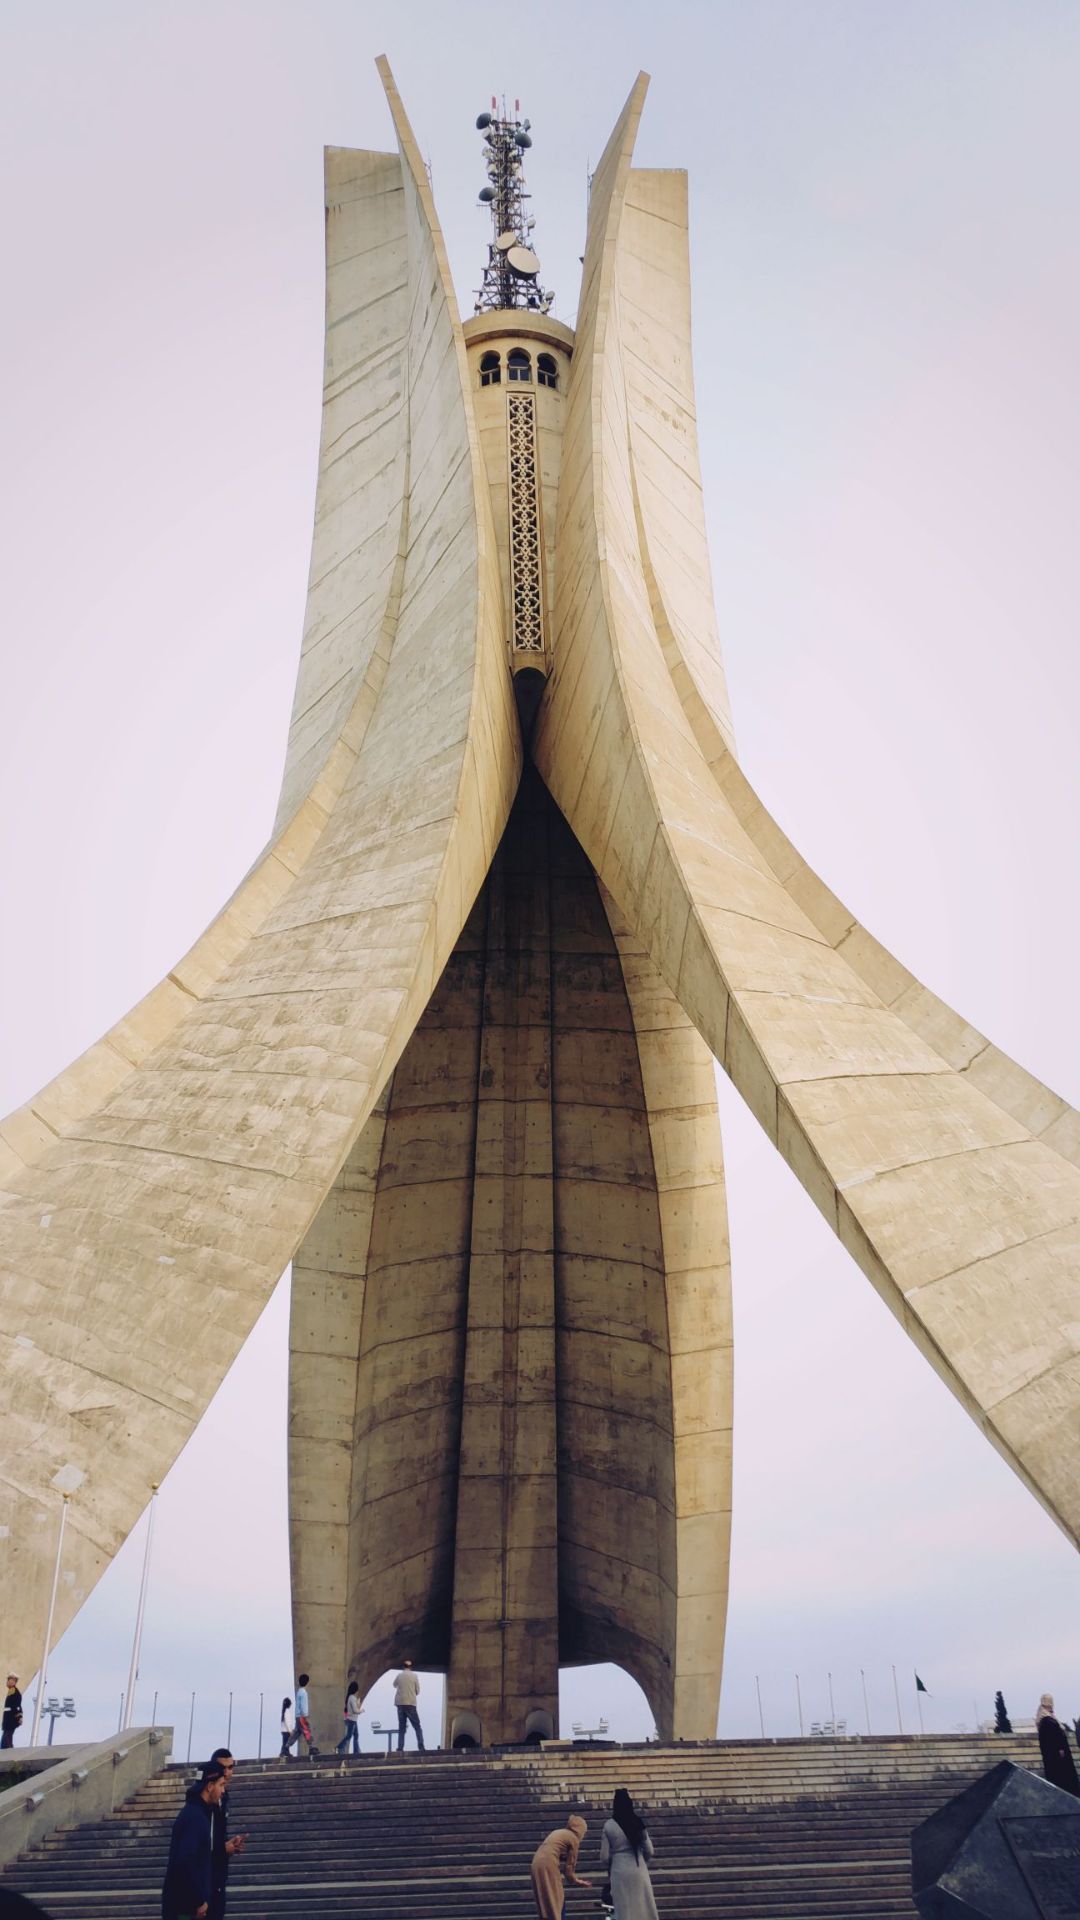 无名烈士纪念塔是阿尔及利亚独立20周年纪念碑，位于海拔127米的马达尼亚区哈马山上，一面朝向碧波荡漾